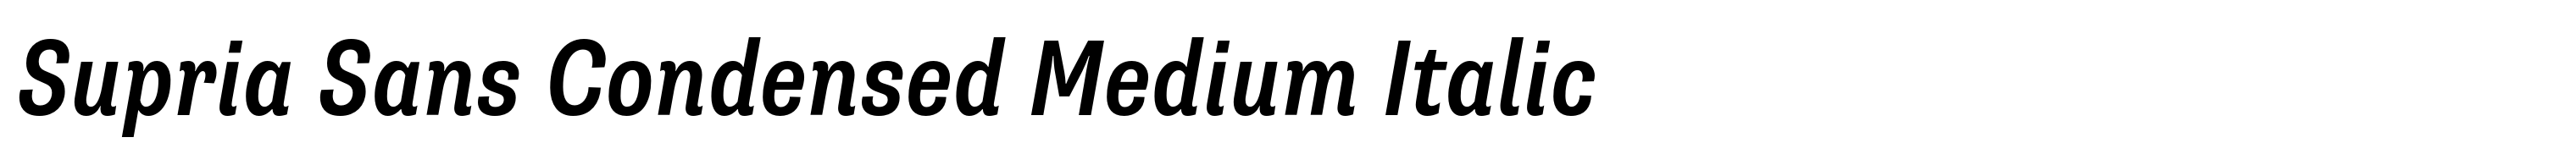 Supria Sans Condensed Medium Italic